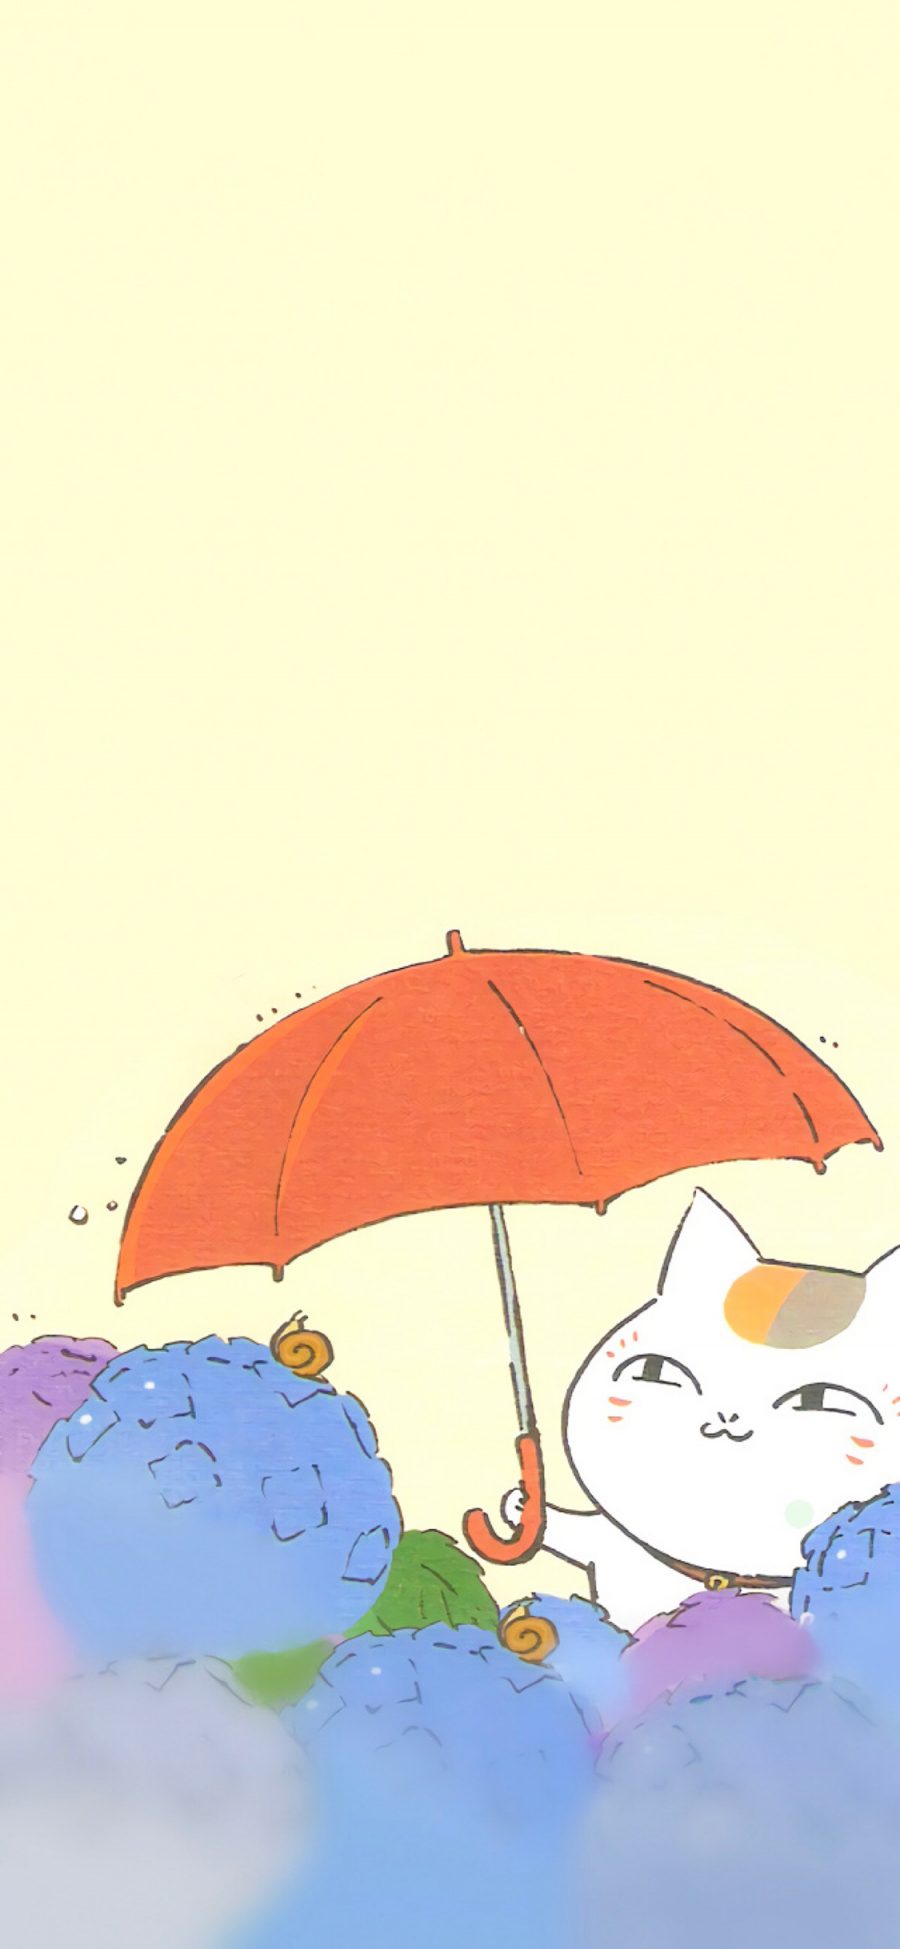 [2436×1125]日漫 夏目友人帐 猫老师 打伞 苹果手机动漫壁纸图片